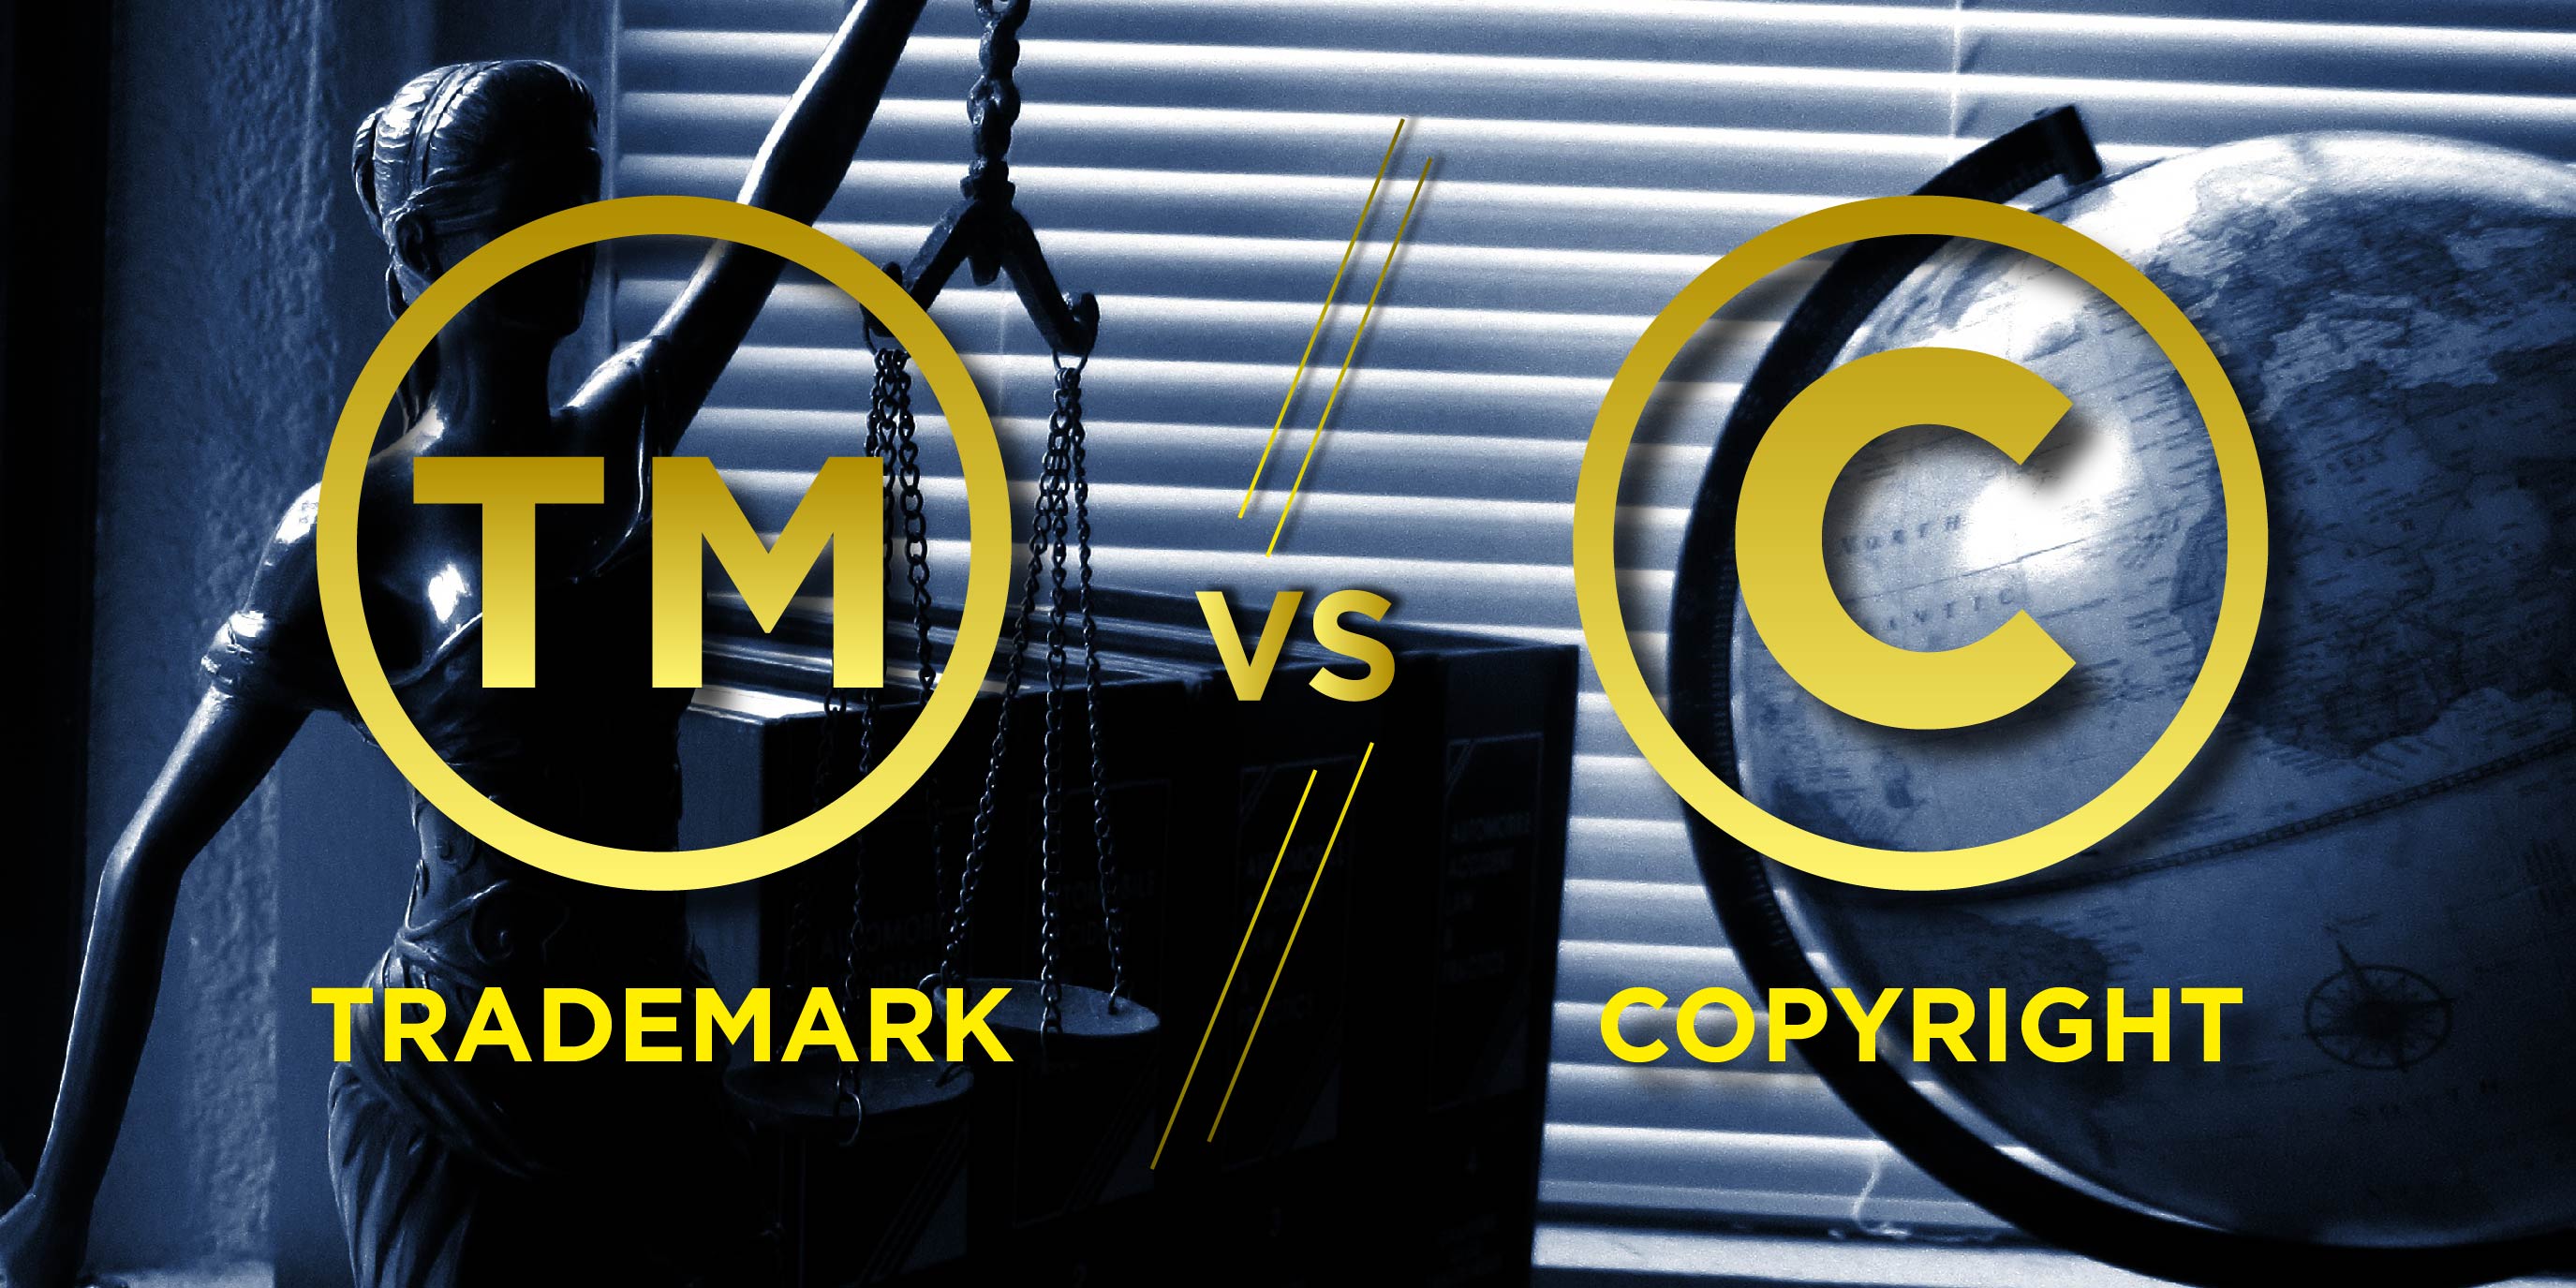 Trademark vs copyright